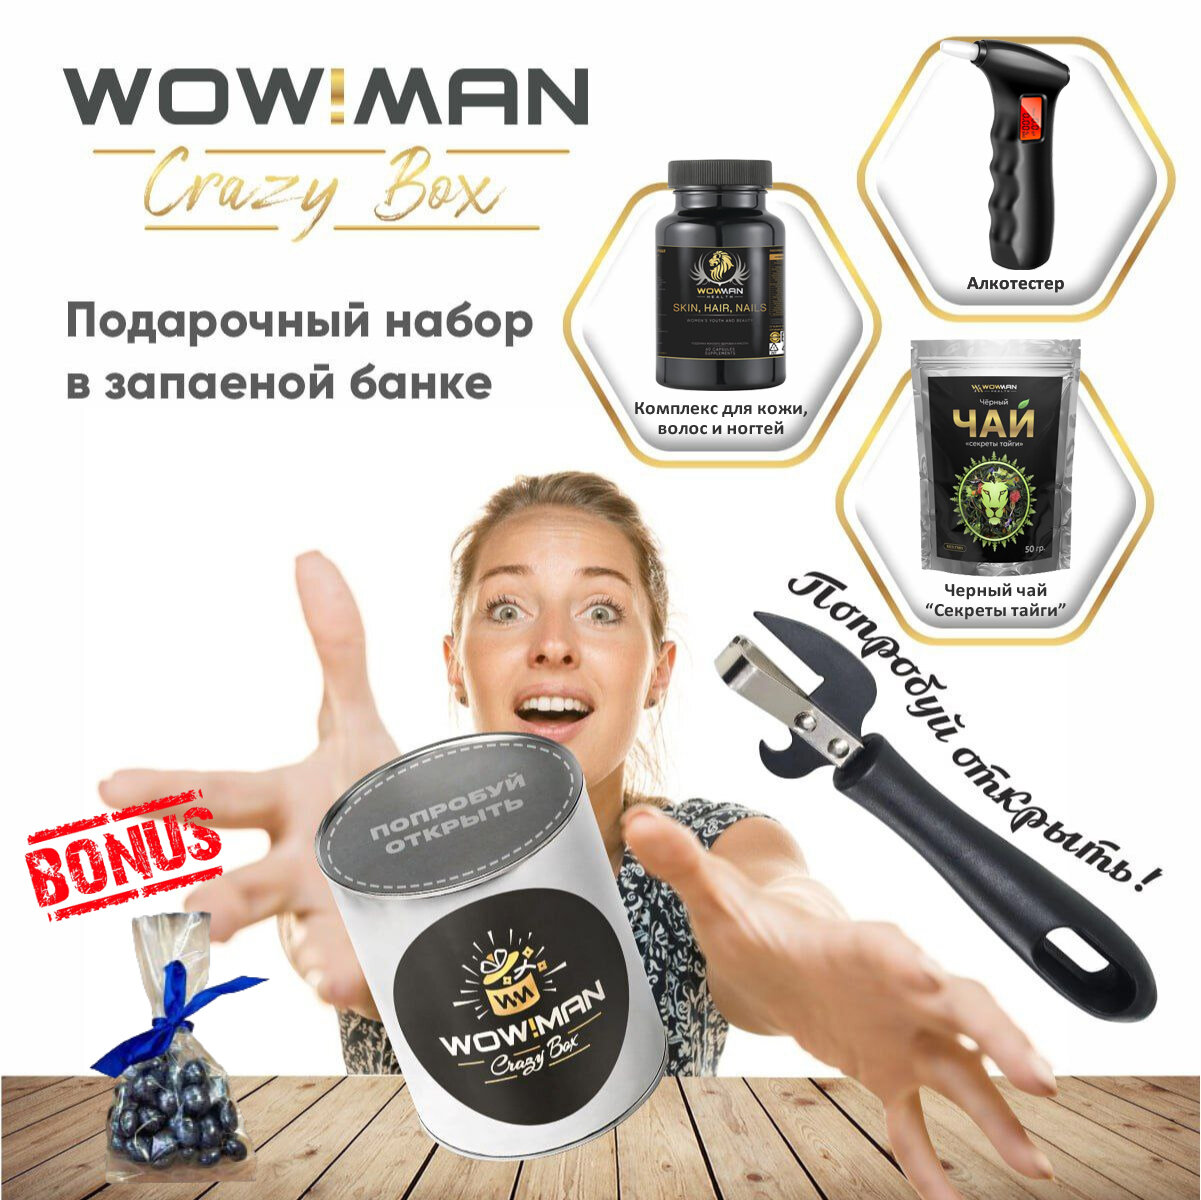 Подарочный набор WowMan Crazy Box Комплекс для кожи волос и ногтей/Алкотестер BandRate Smart BRSA65SR/Черный чай "Секреты тайги" 50 гр